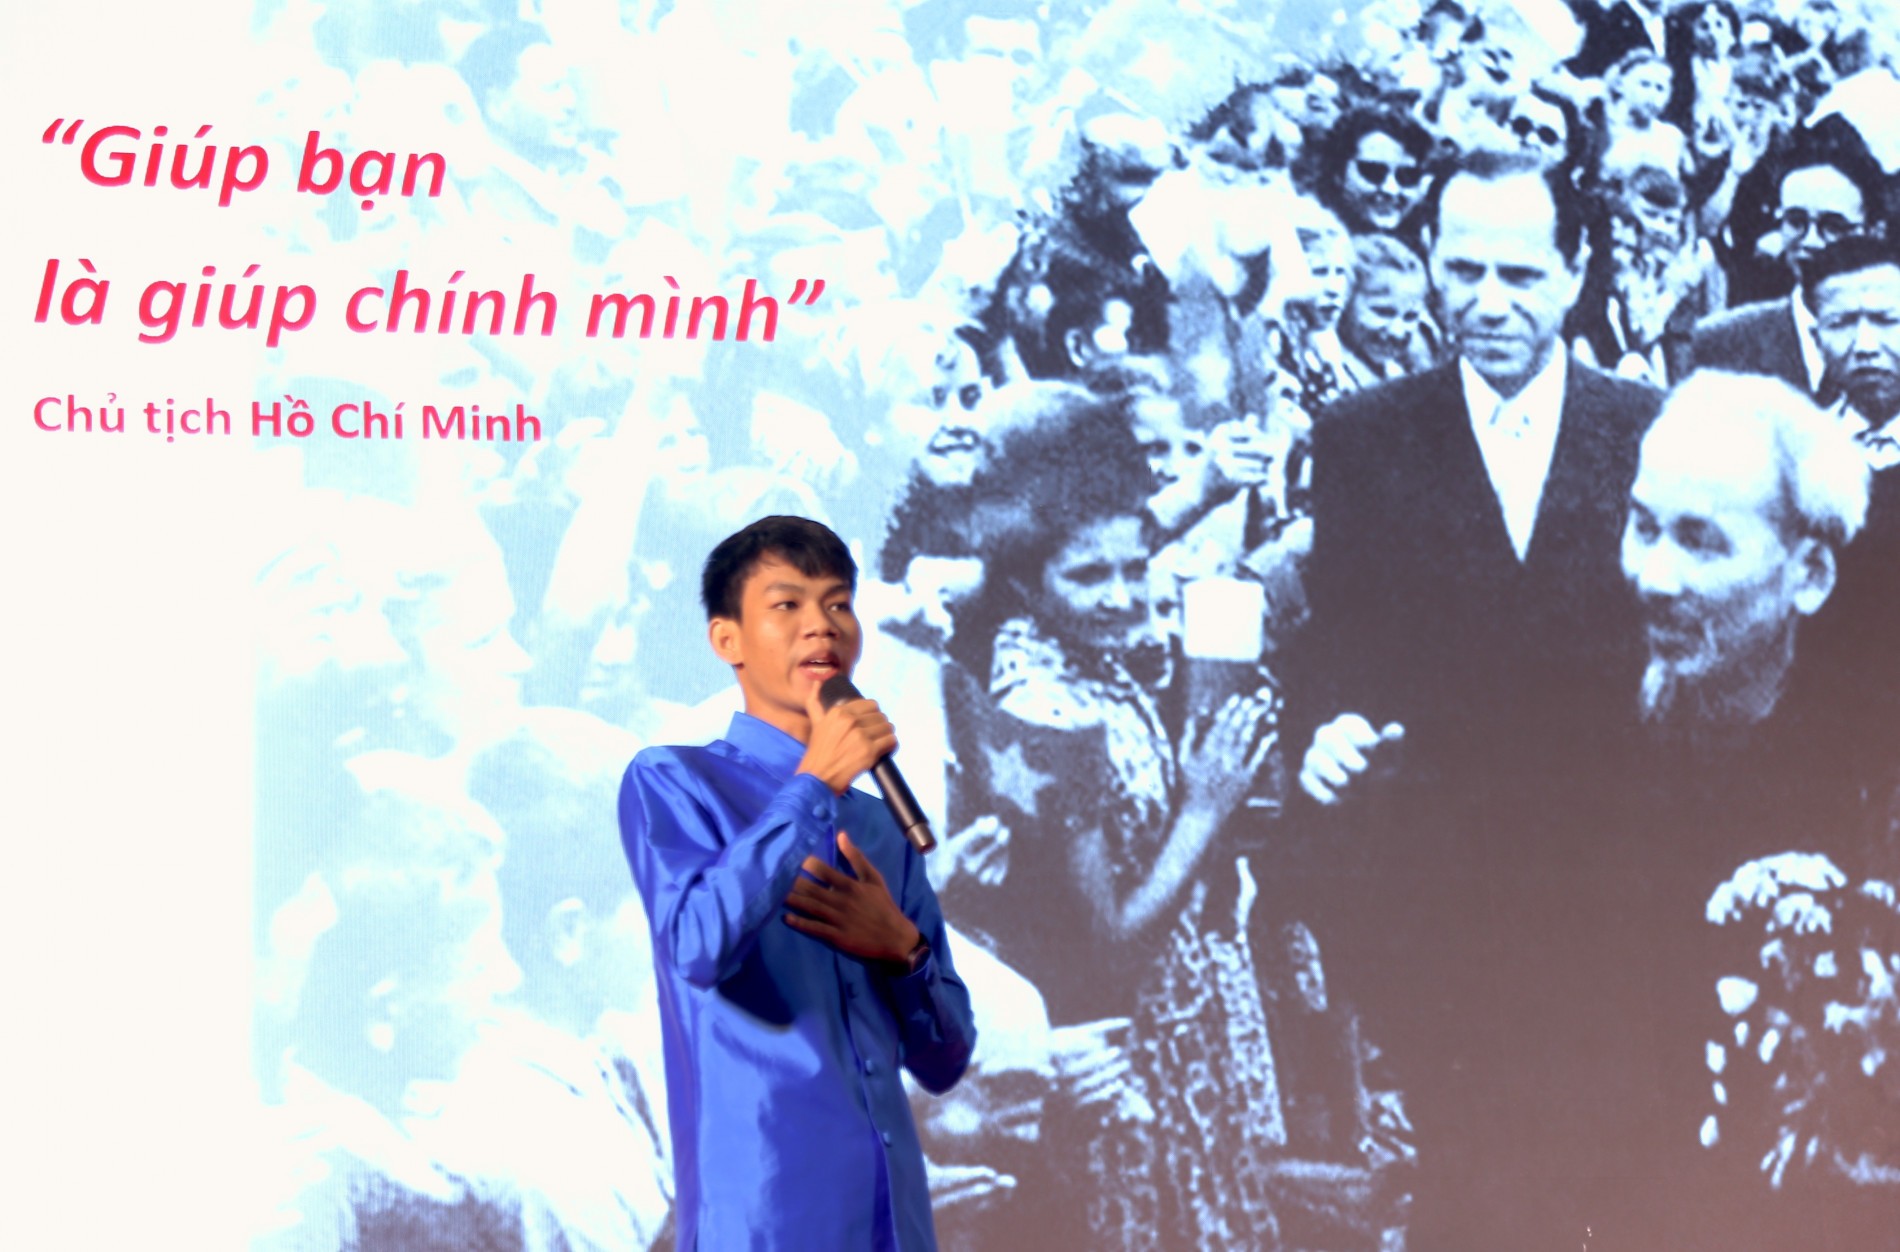 Lưu học sinh Campuchia vui Tết Chol Chnam Thmay ở Việt Nam